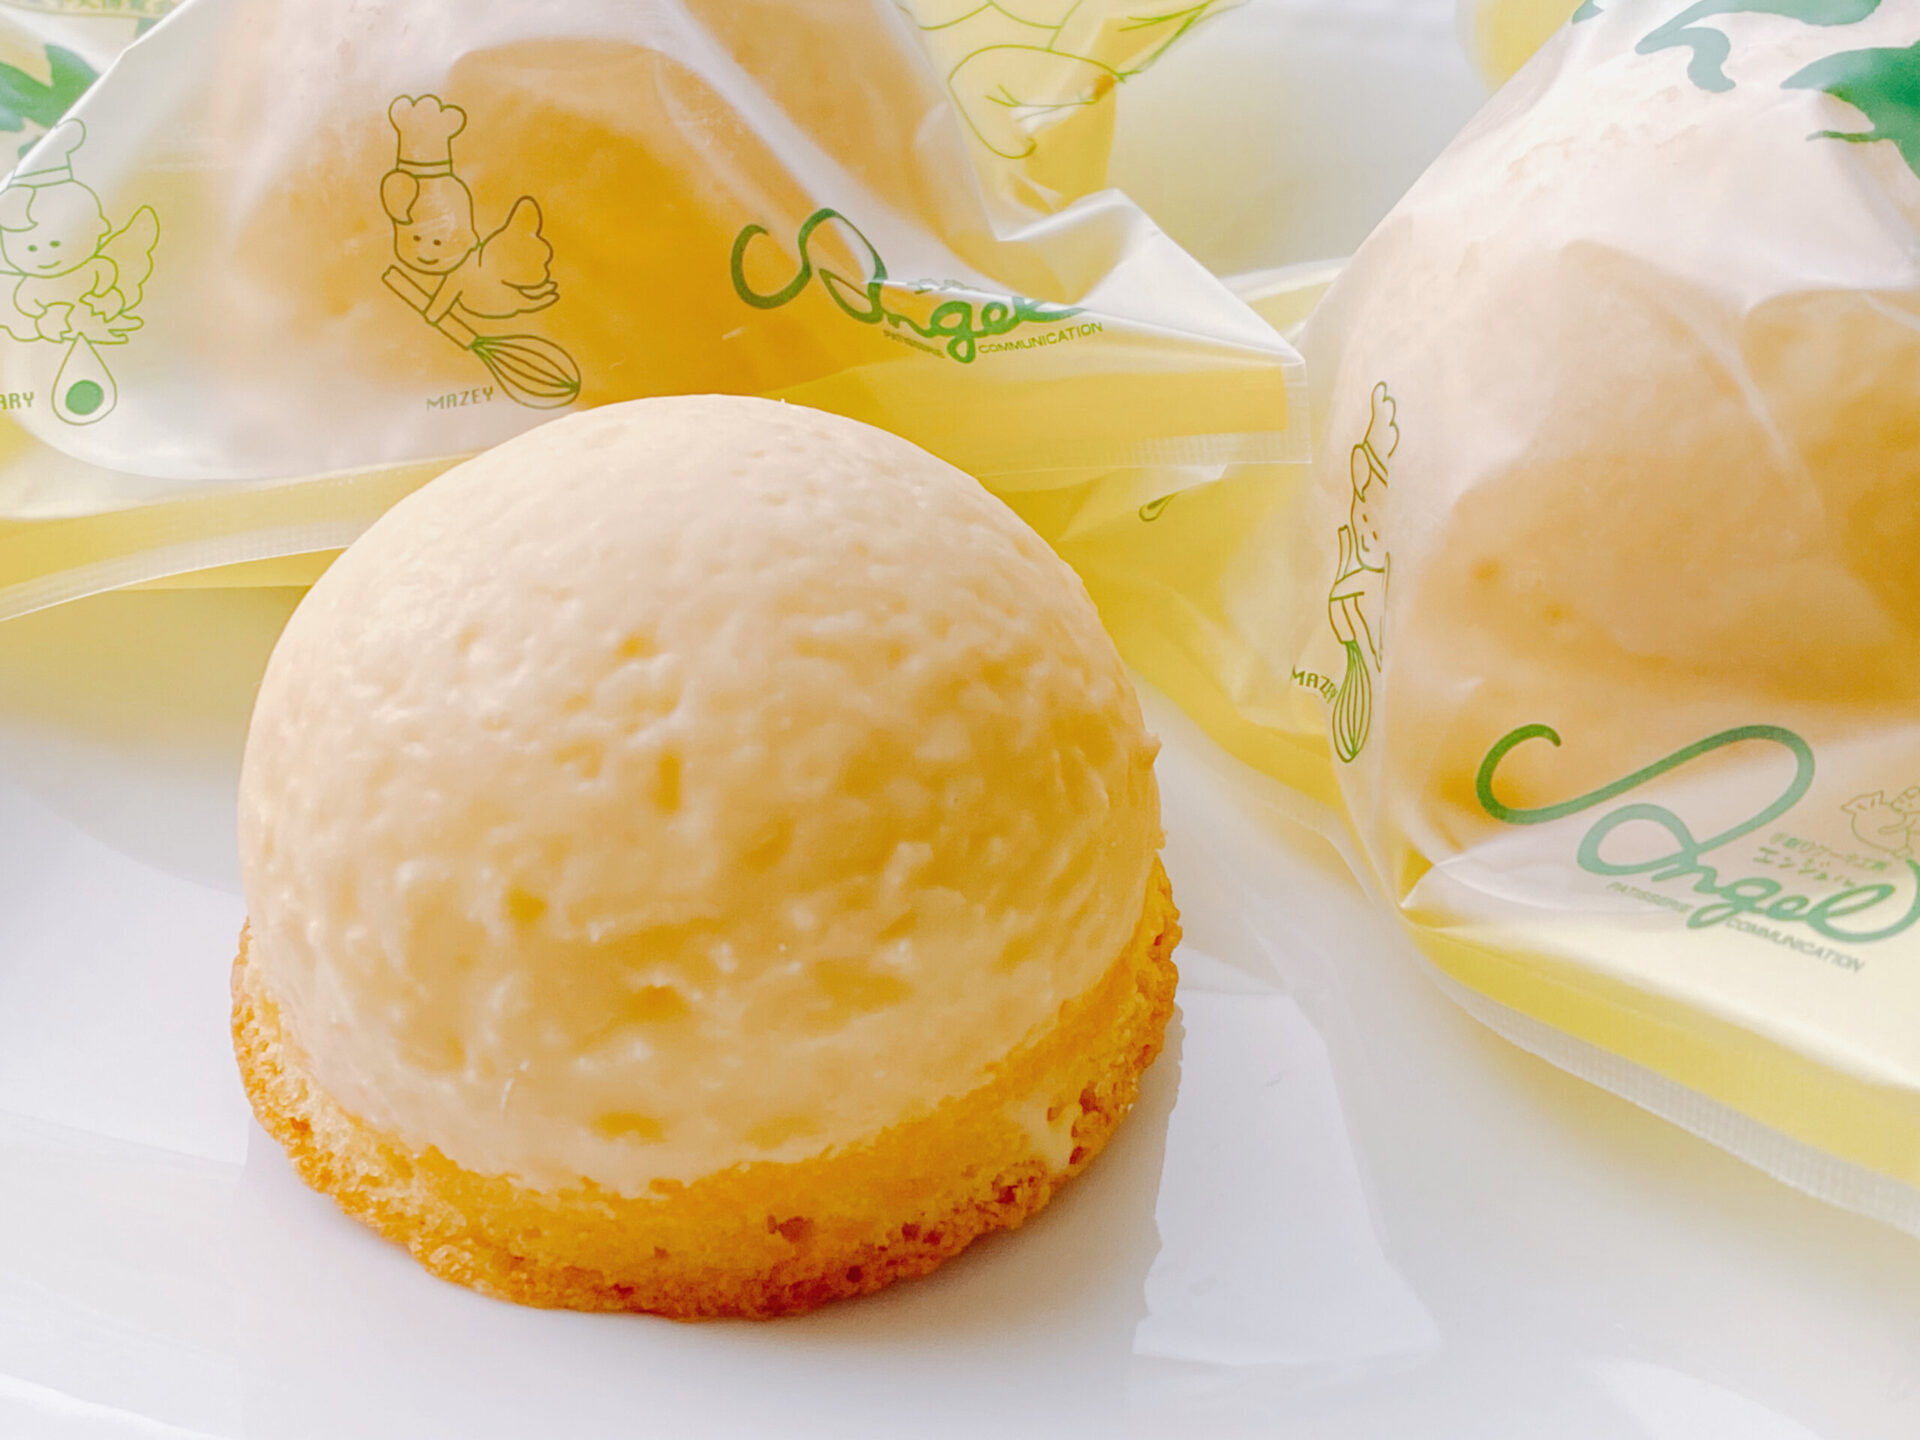 レモンケーキ 年間5万個を販売 広島を代表する絶品スイーツ なじみマガジン Onomichi 地域で愛される逸品を知る